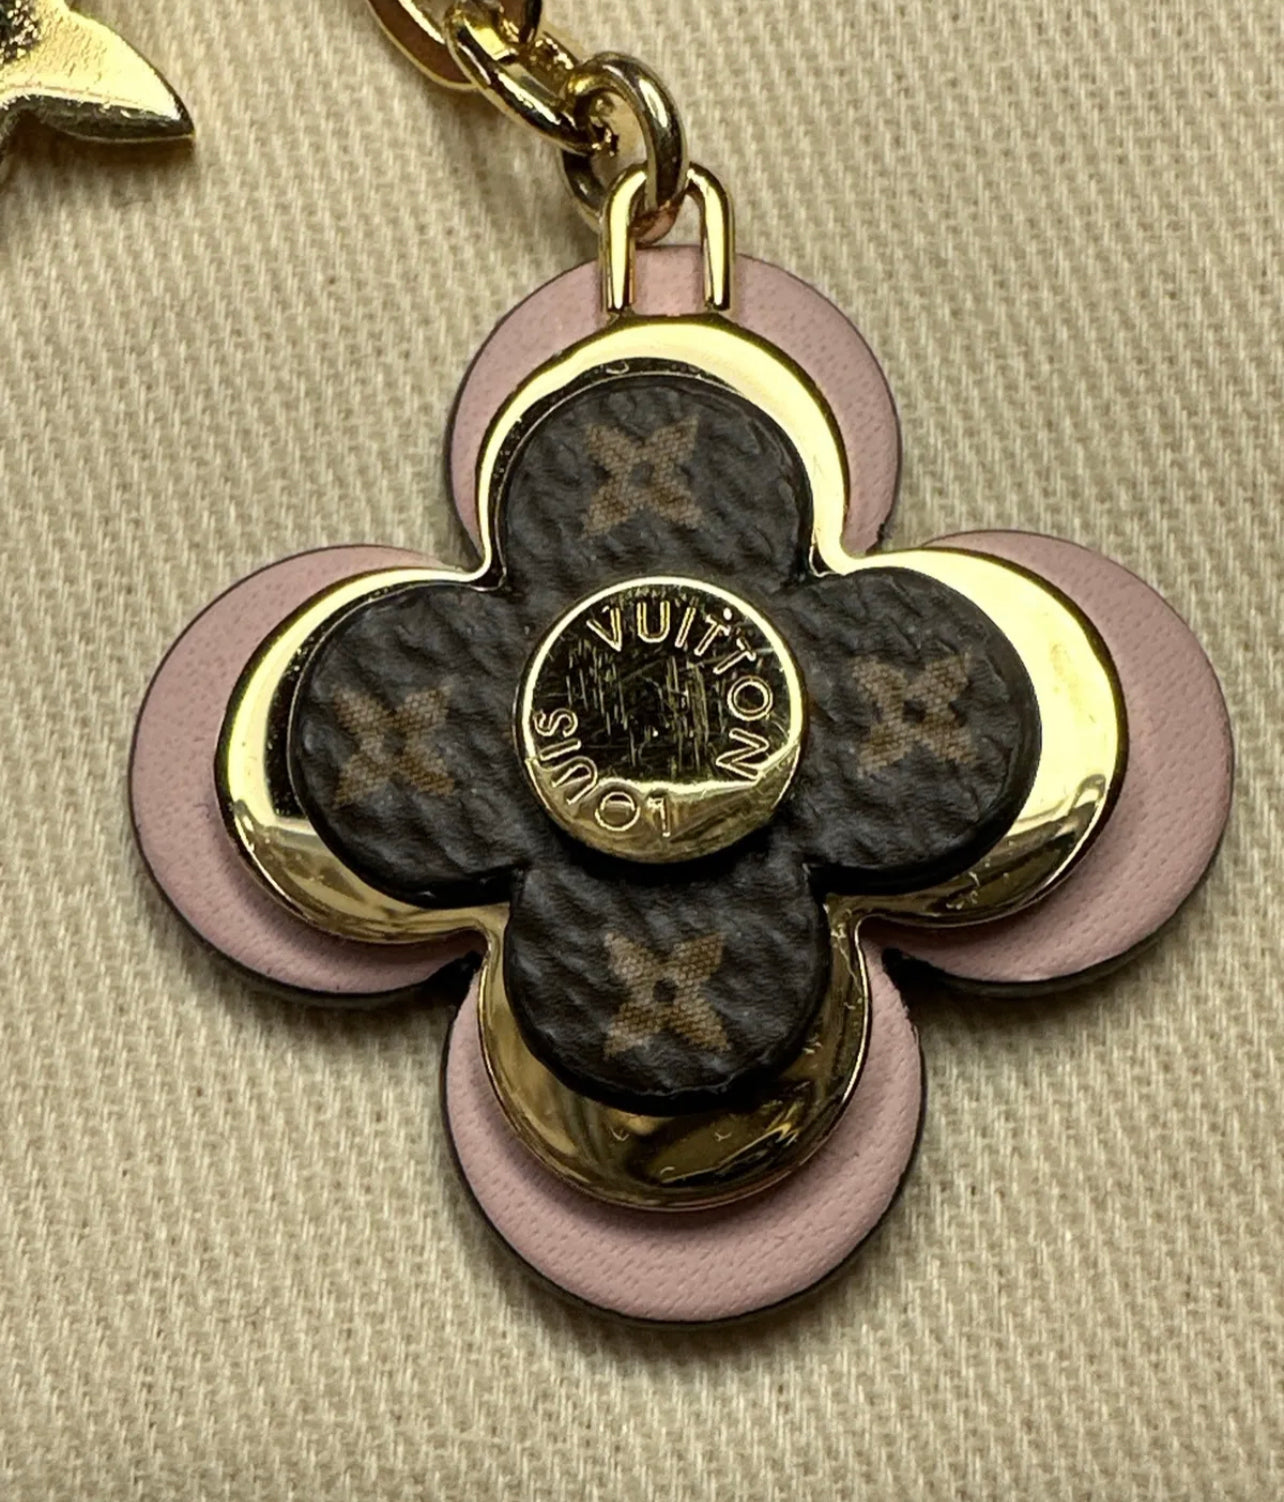 Louis Vuitton Flower Keychain Charm